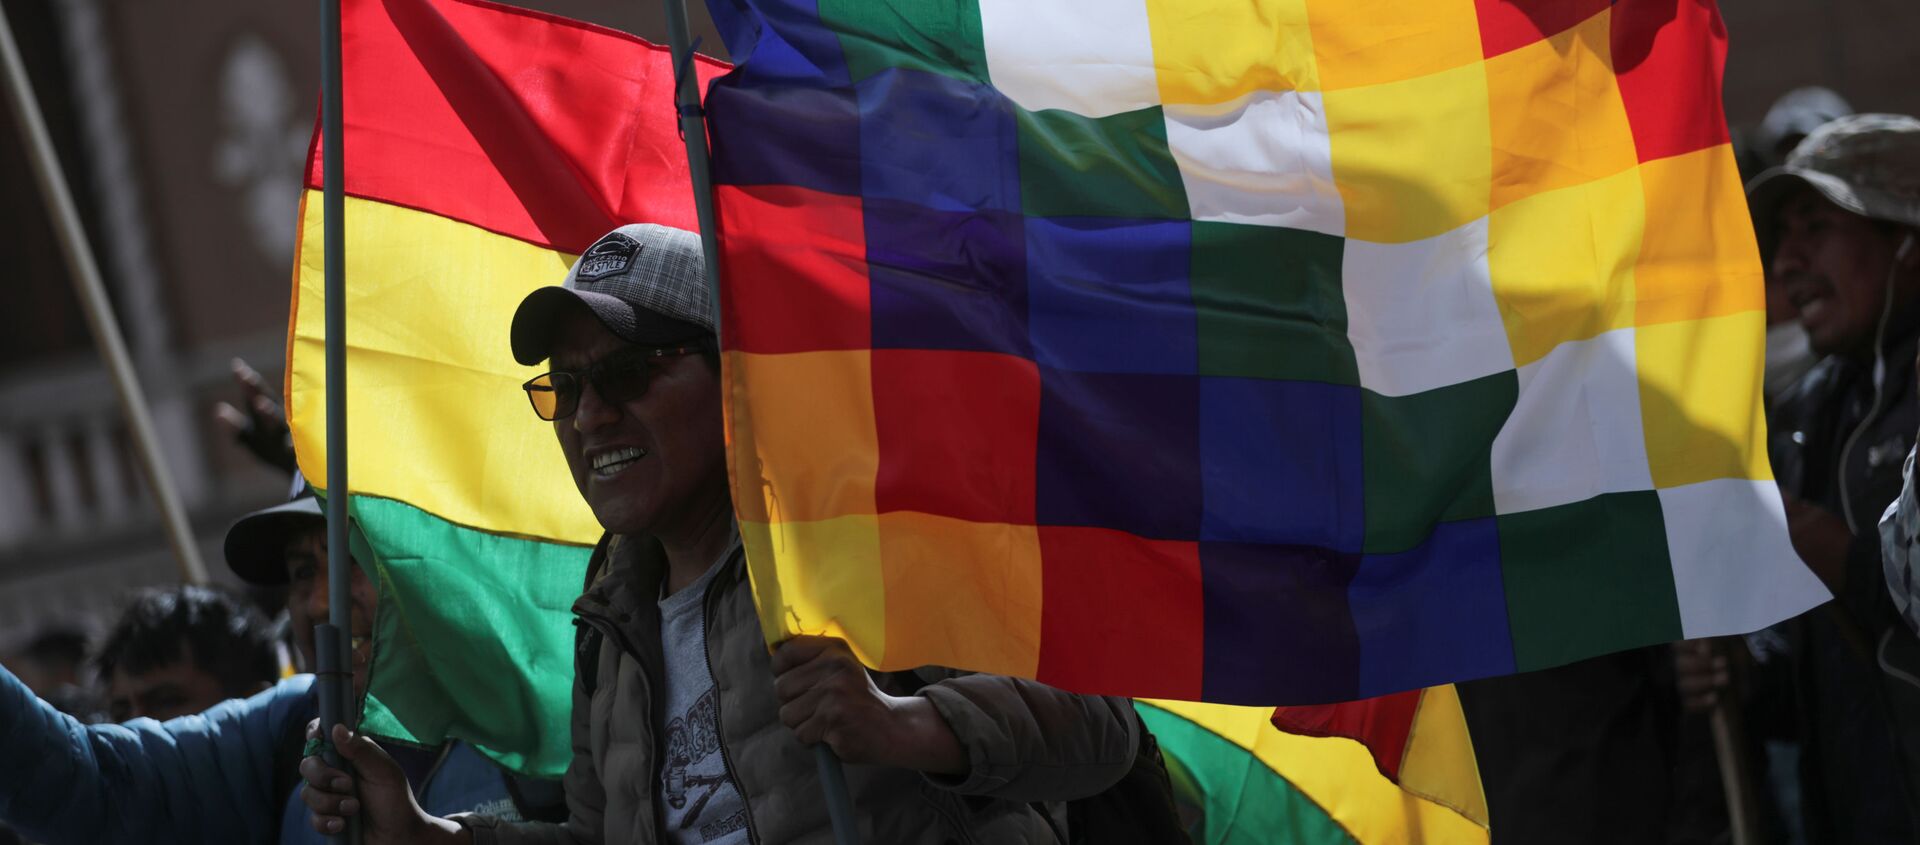 La bandera wiphala y la tradicional de Bolivia alzada por un manifestante durante una marcha en La Paz en apoyo a Evo Morales, noviembre de 2019 - Sputnik Mundo, 1920, 13.11.2019